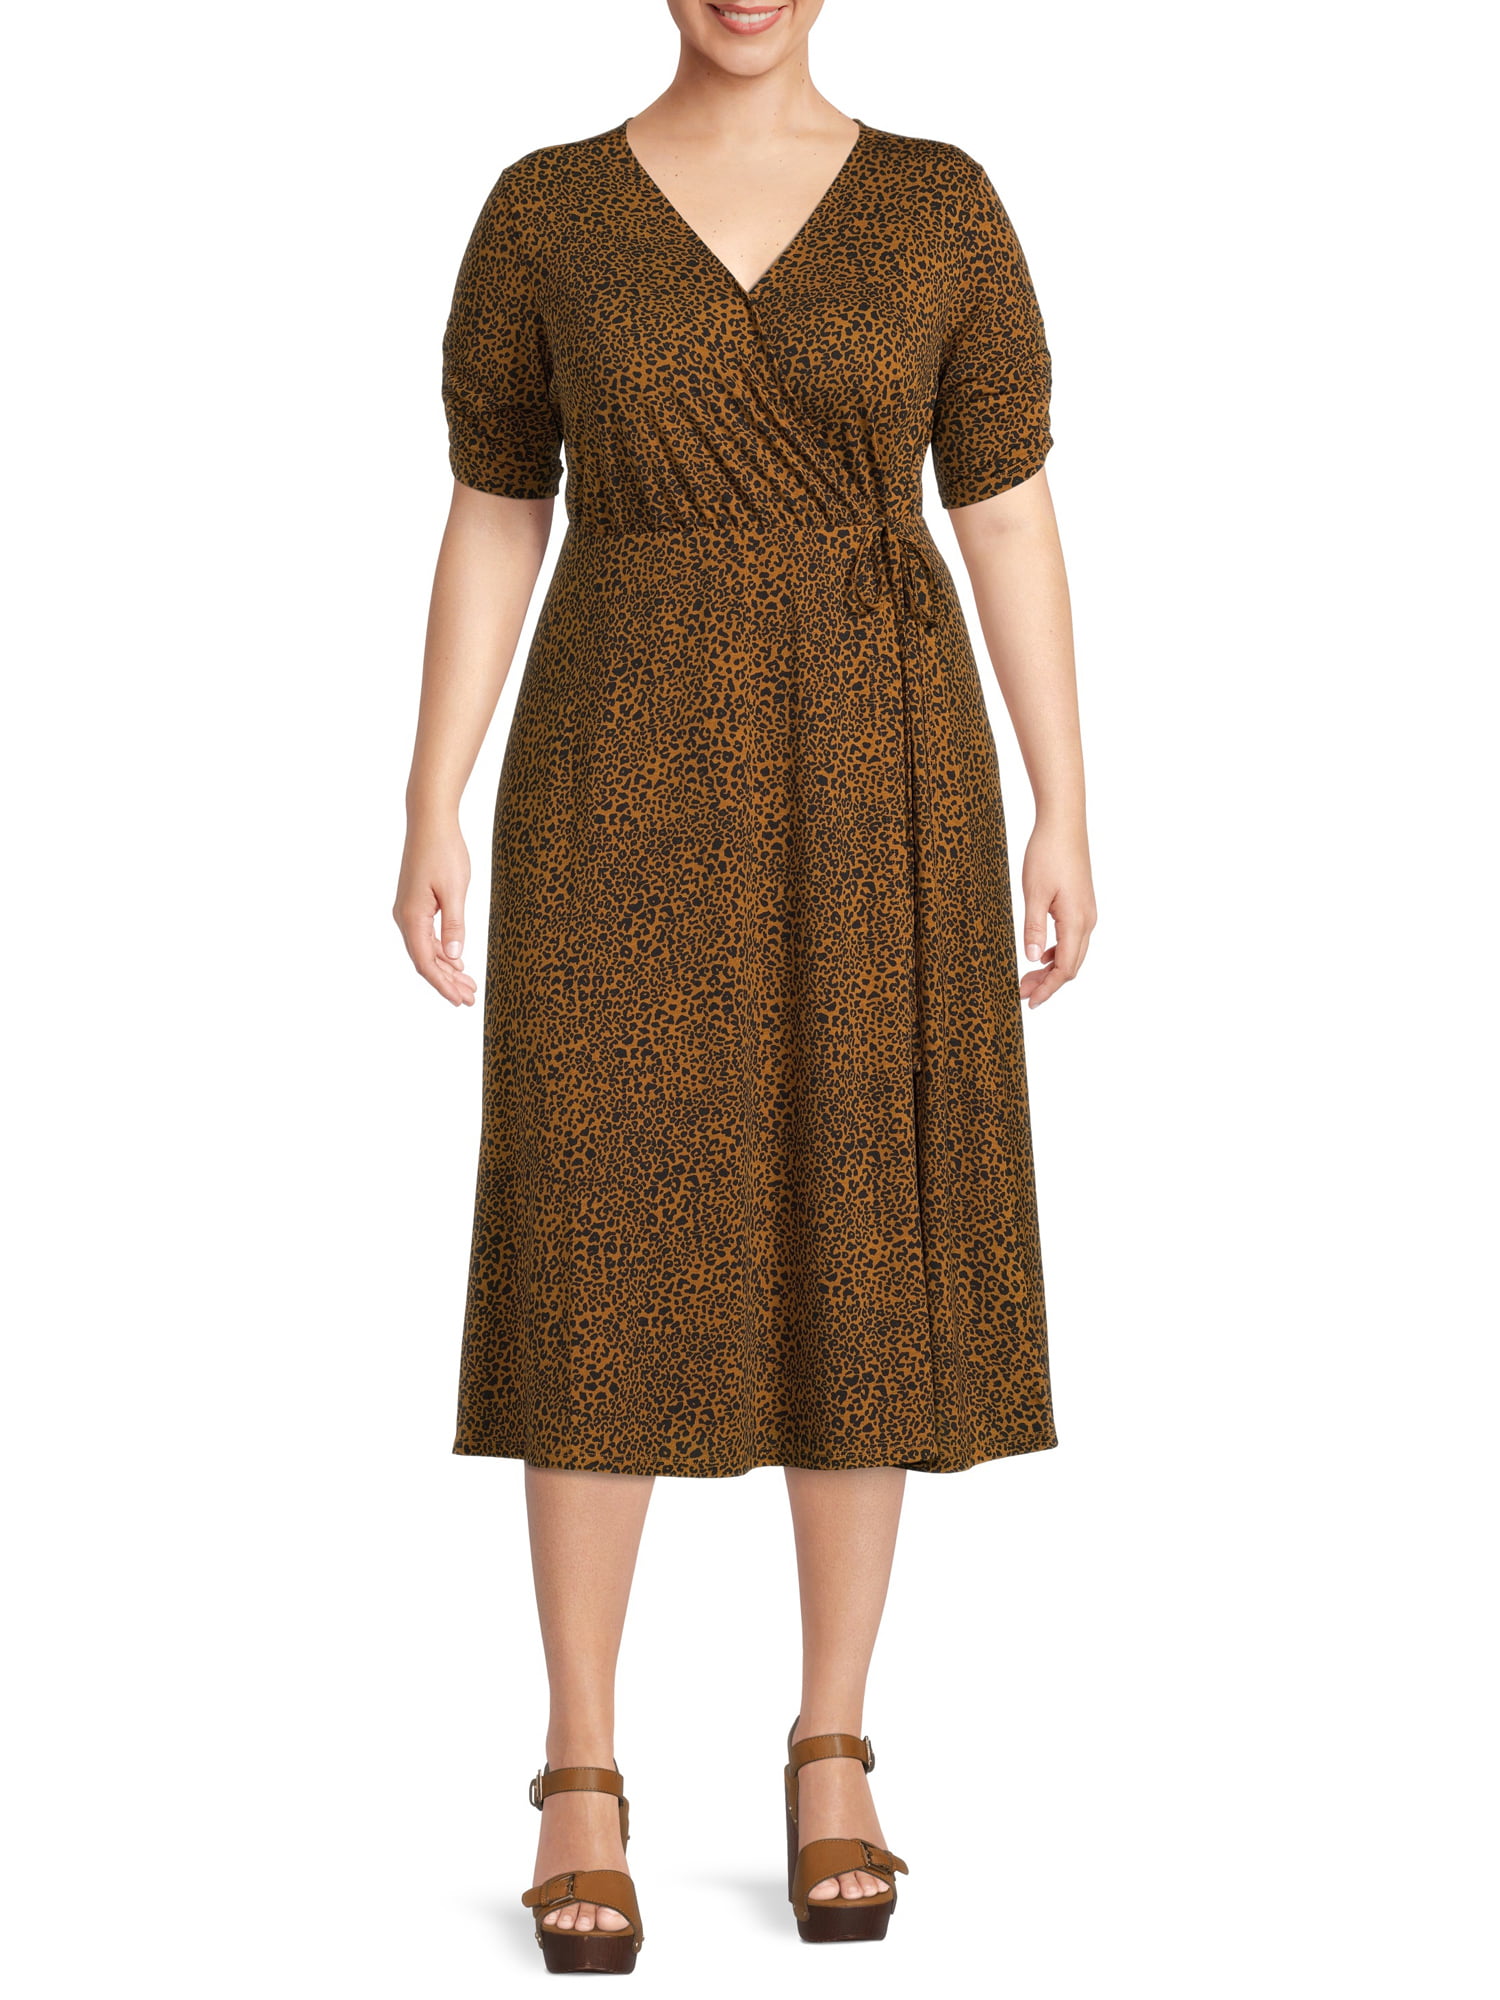 Terra \u0026 Sky Mid-Length V-Neck Wrap Dress (Women's Plus), 1 Count, 1 Pack -  Walmart.com